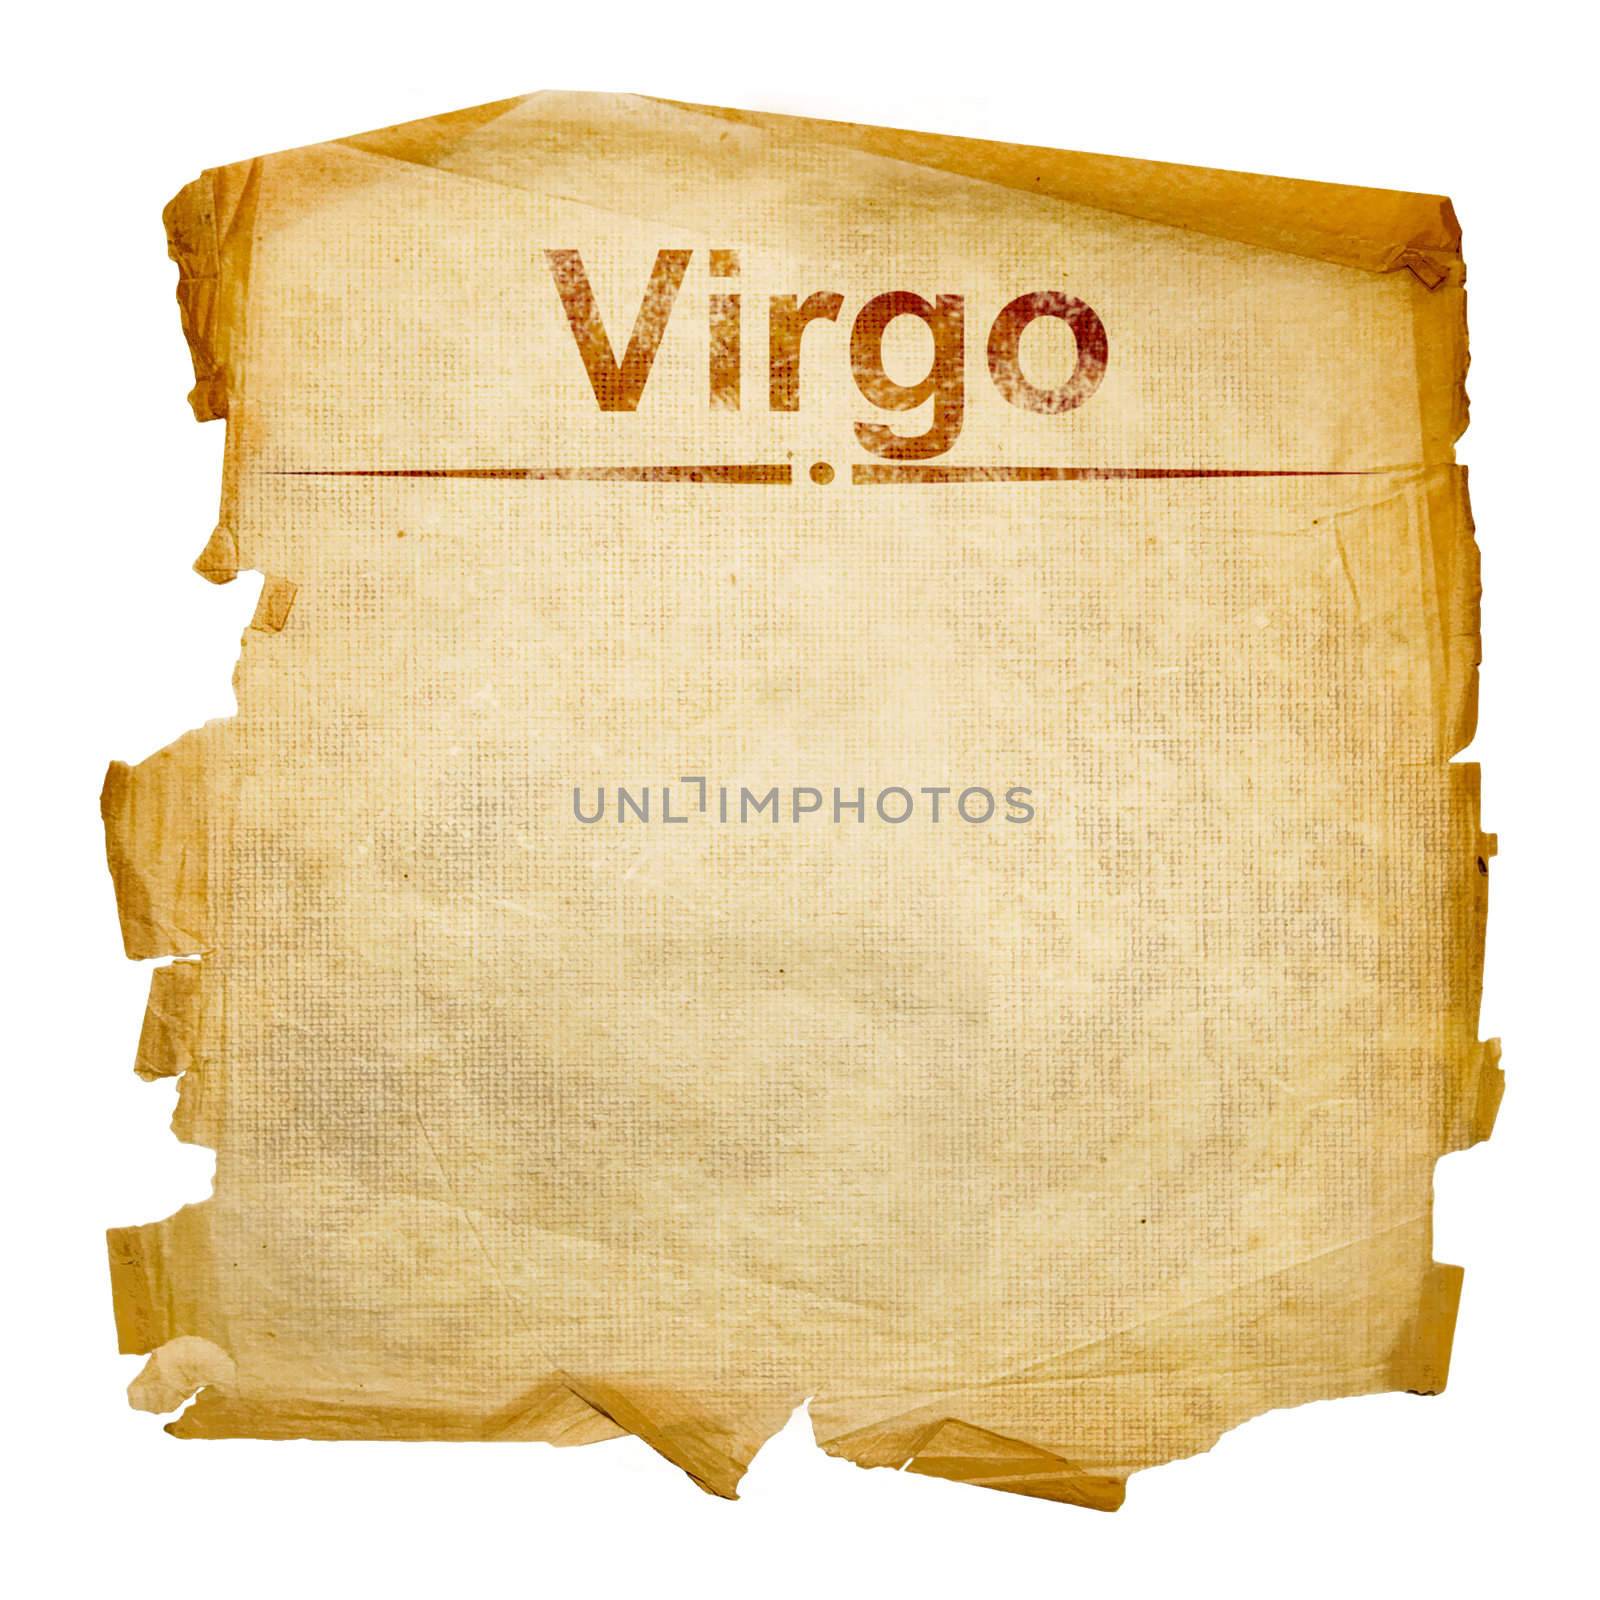 Virgo zodiac old, isolated on white background.